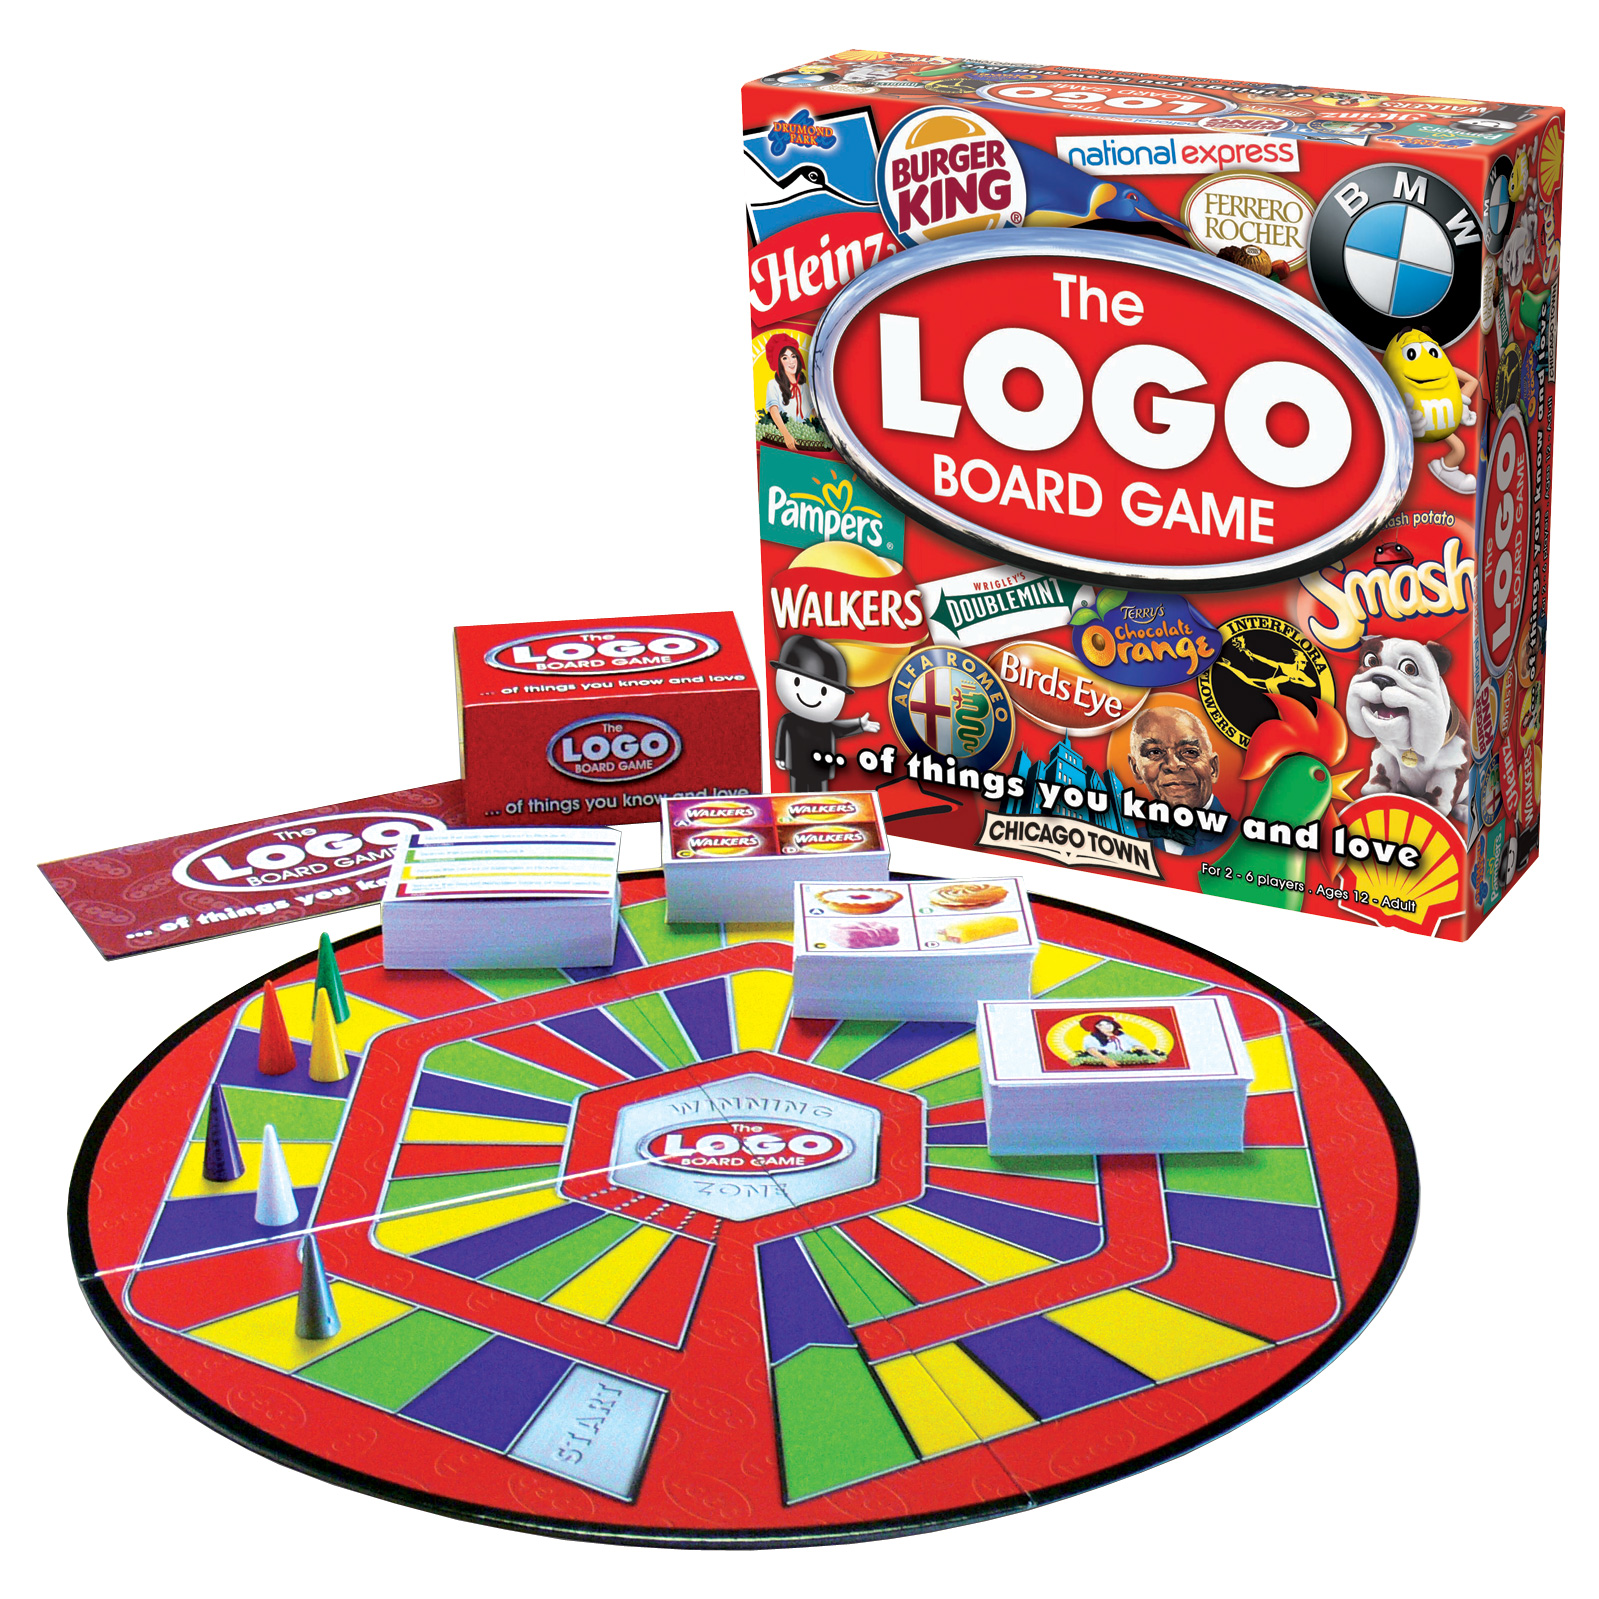 LOGO family board game